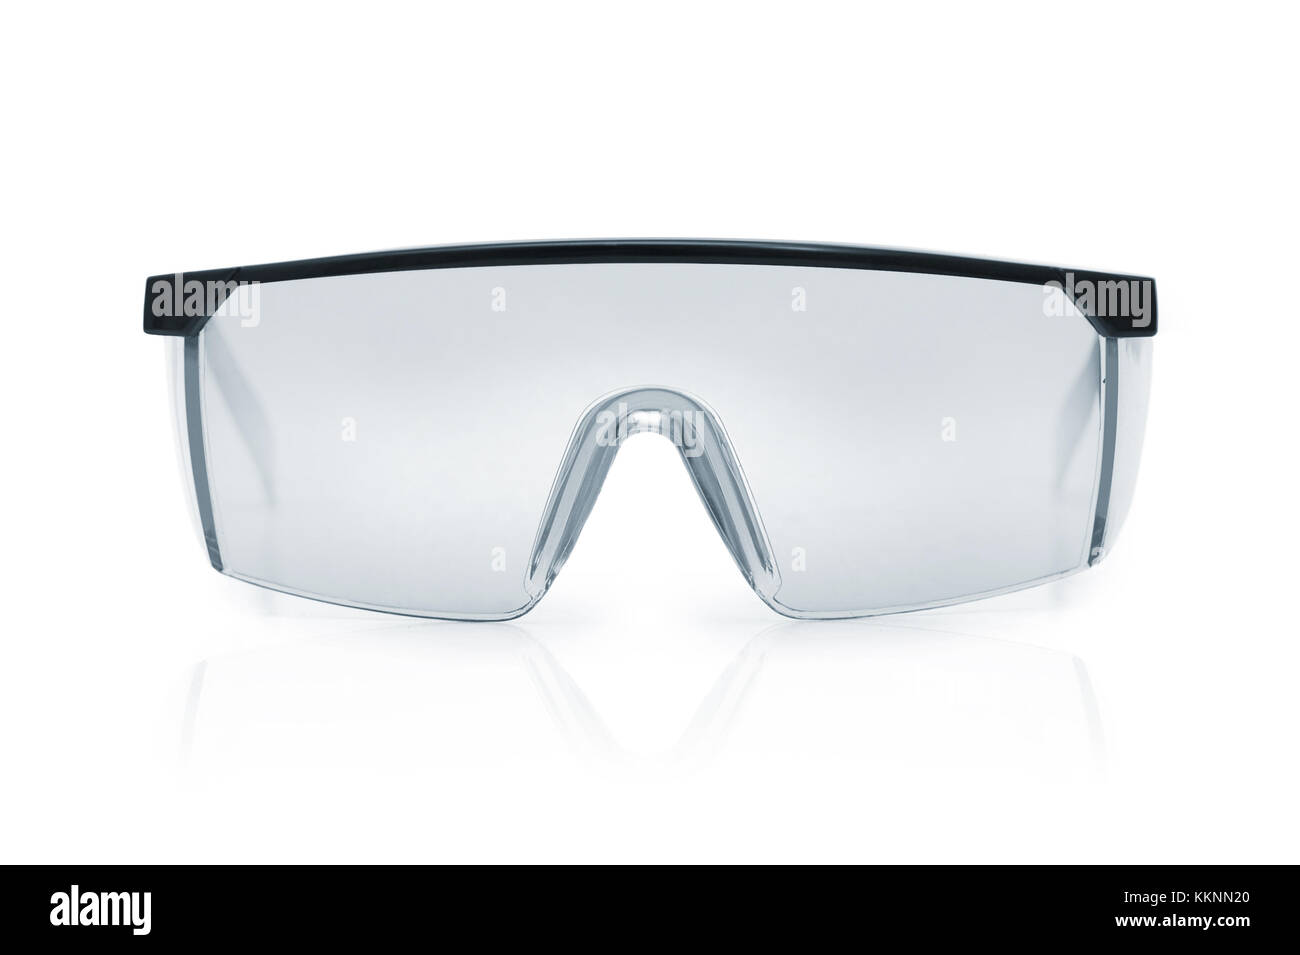 Gafas de seguridad de plástico sobre fondo blanco. gafas de trabajo eye  protection gear para construcción, medicina y deportes